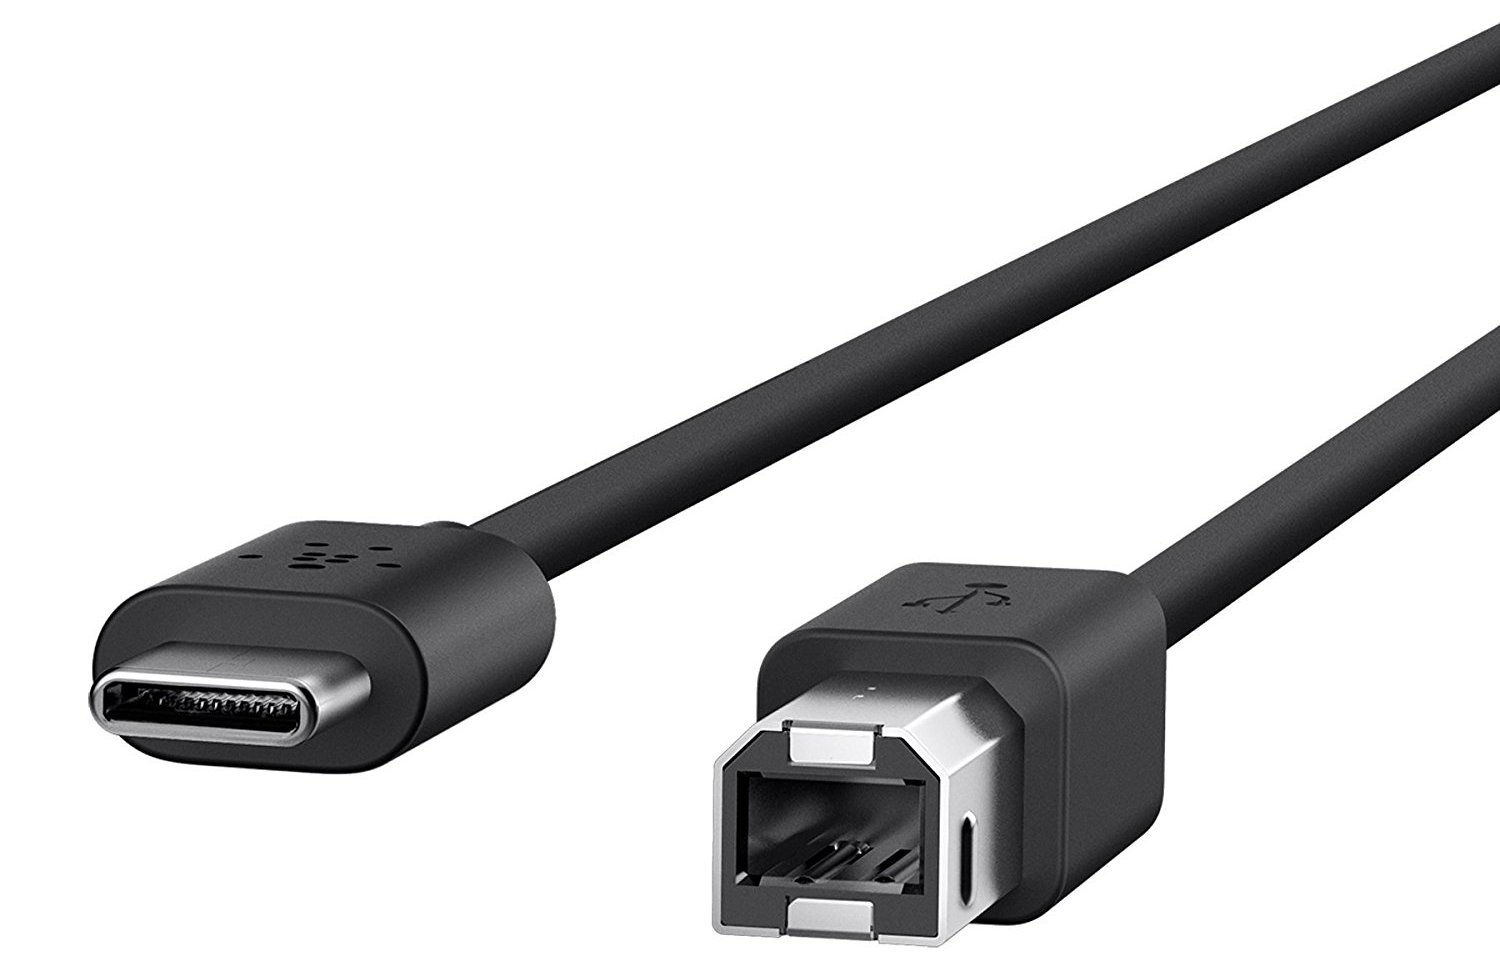 Cable Faceoff: USB-C Vs Lightning Vs Thunderbolt 3